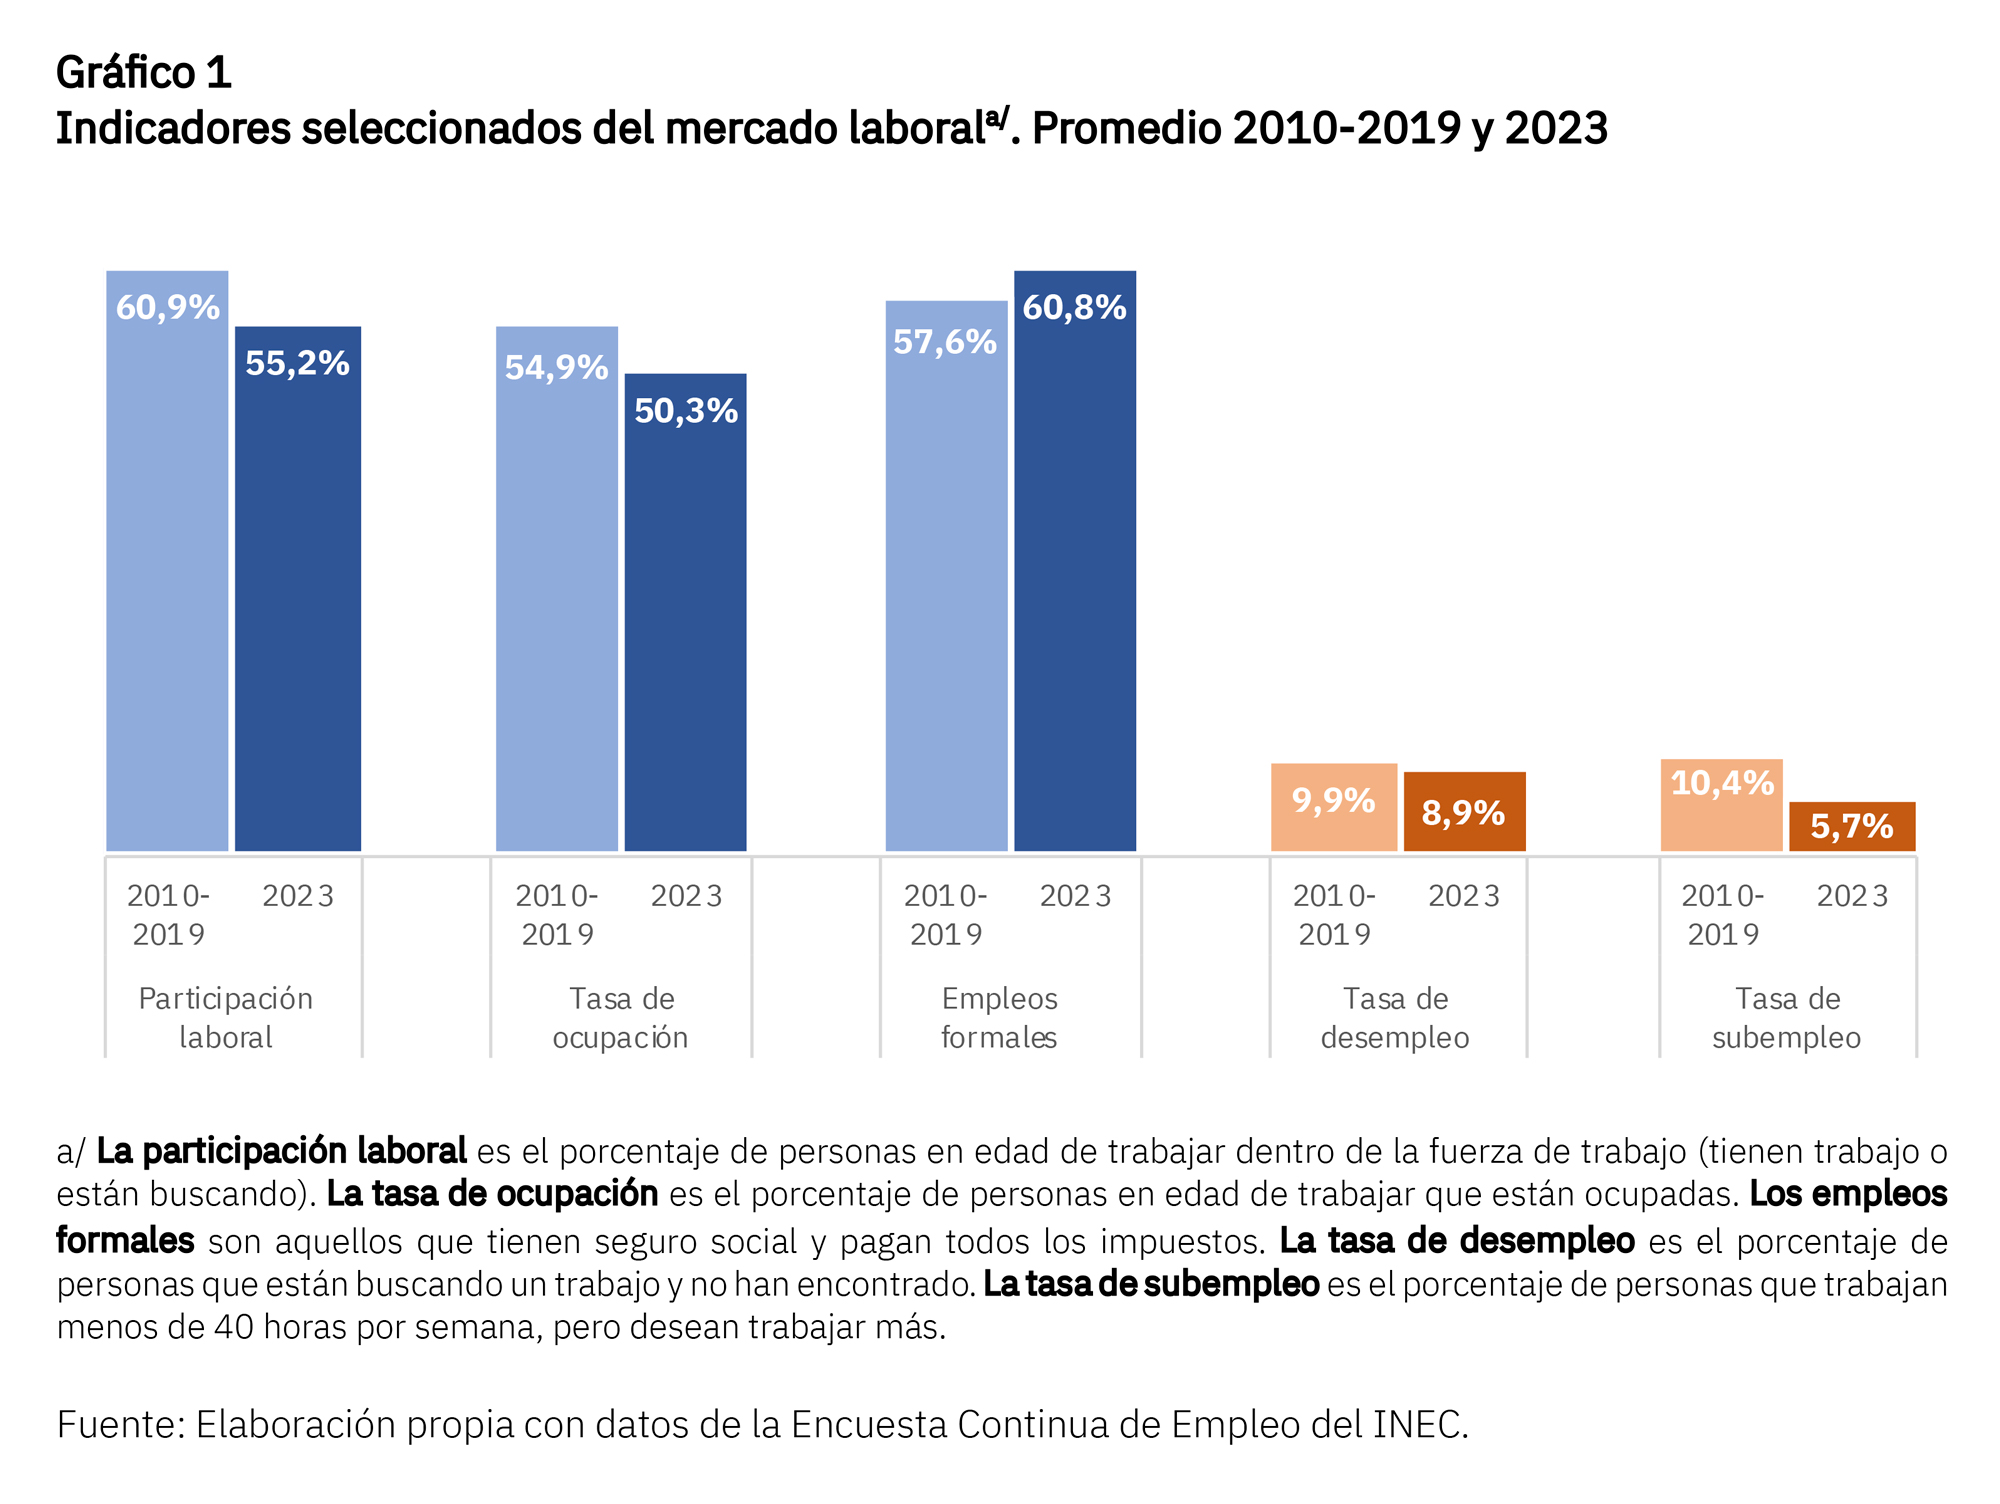 Gráfico sobre indicadores del mercado laboral en Costa Rica